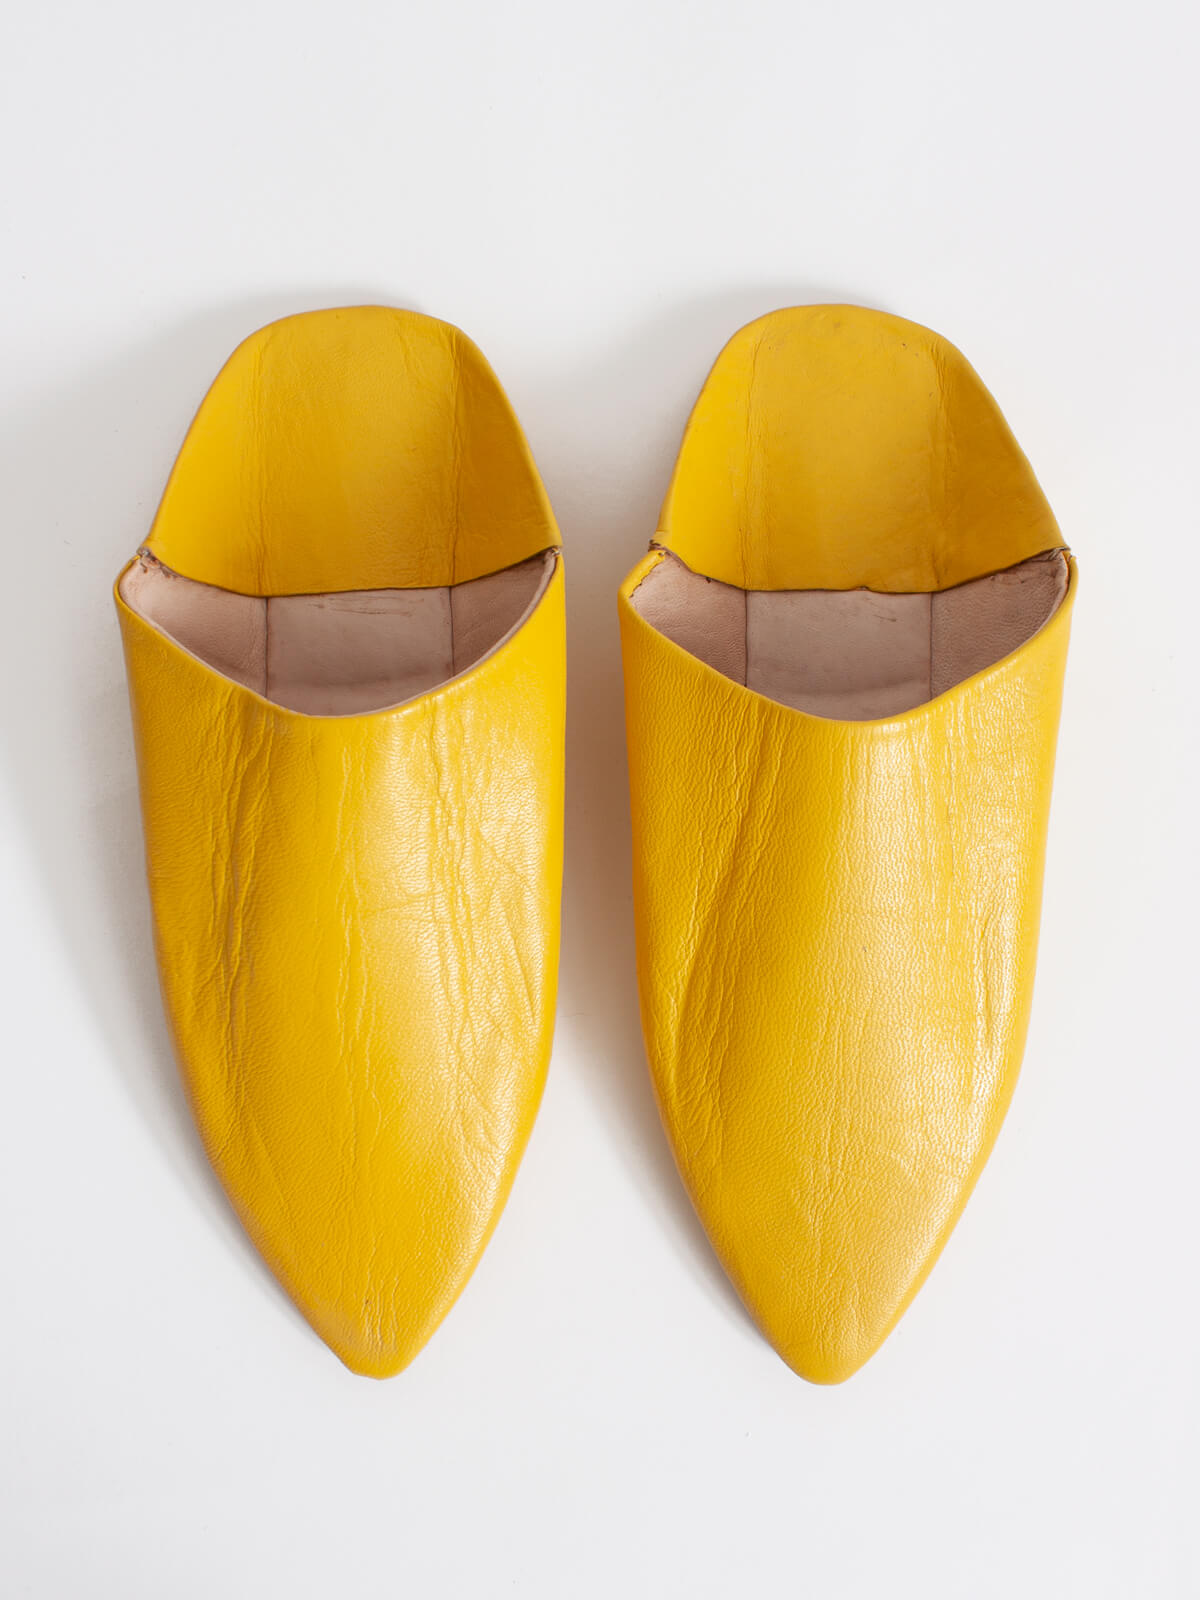 Moroccan yellow babouche slippers Dambira. Handmade with round tip